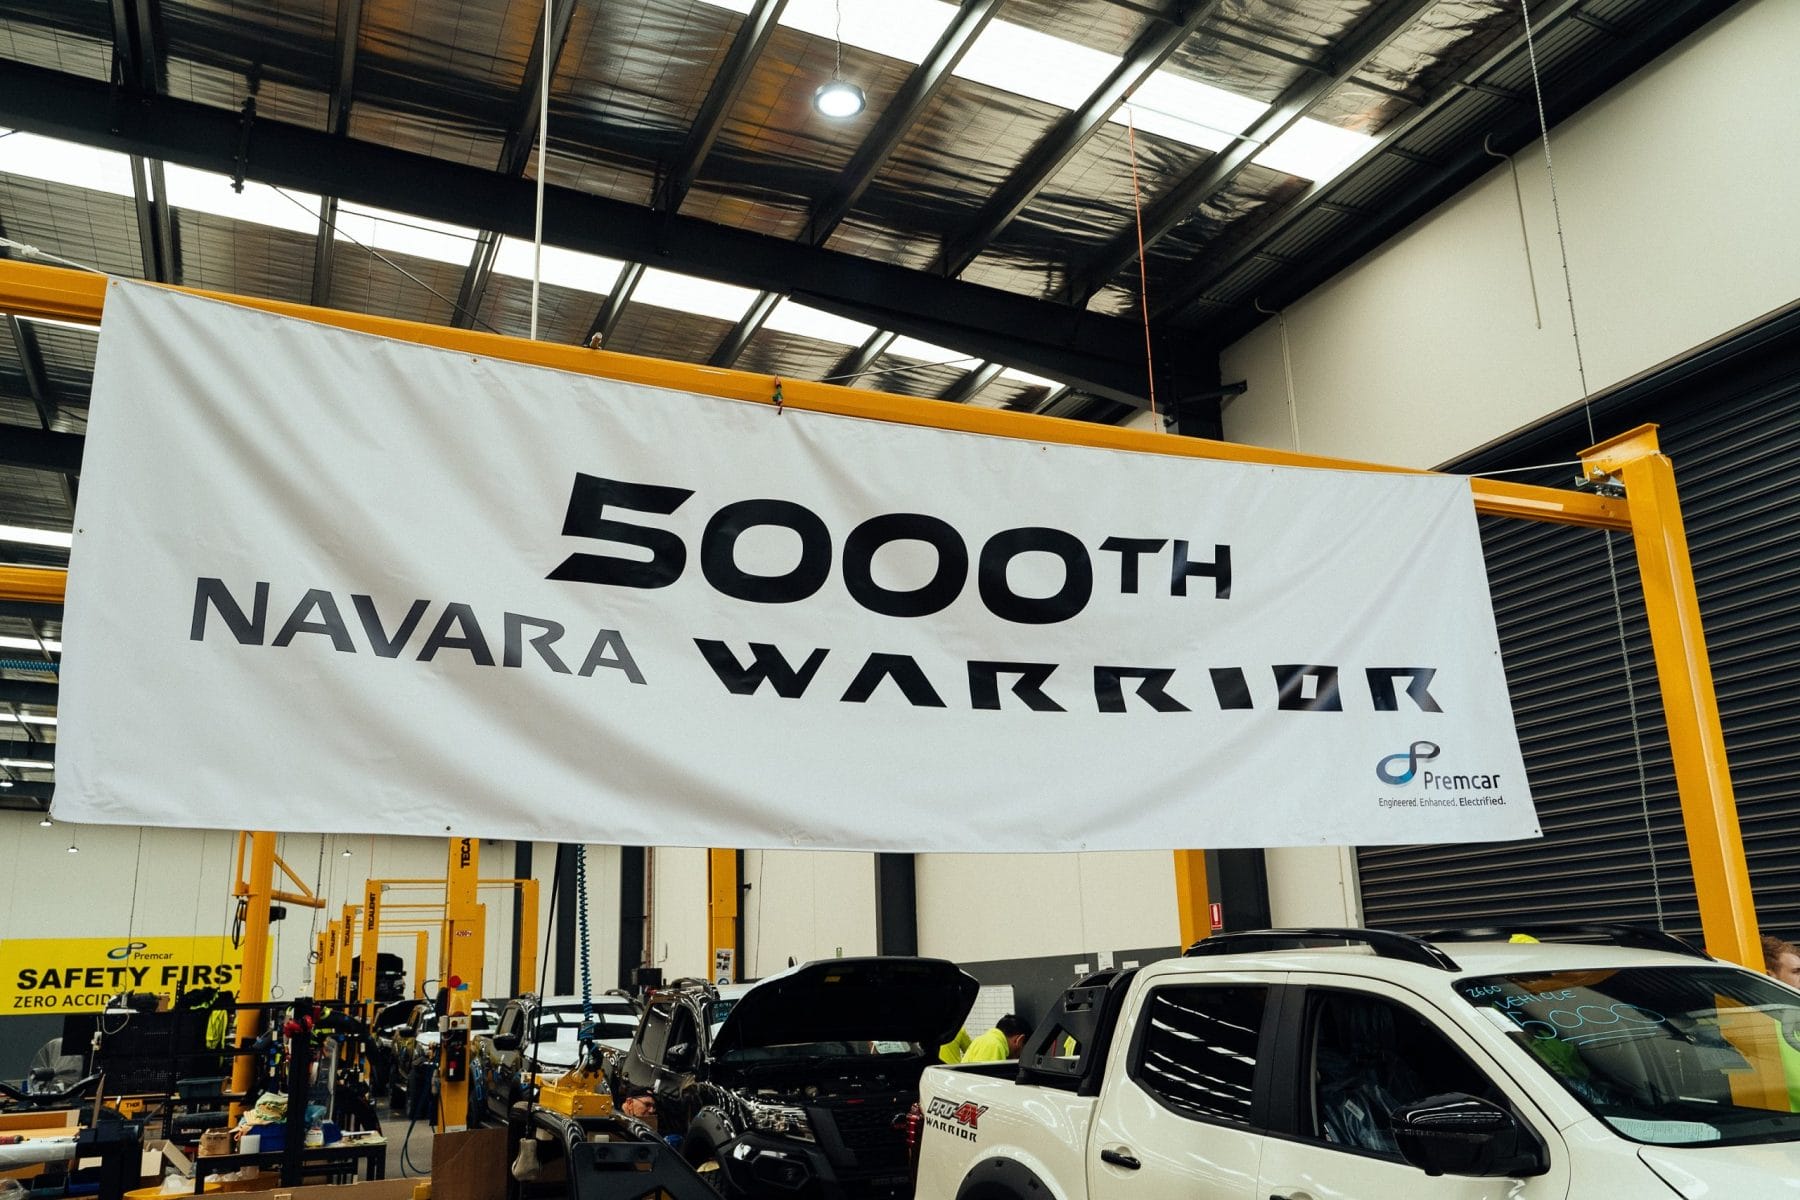 Nissan Navara Warrior by Premcar 5000